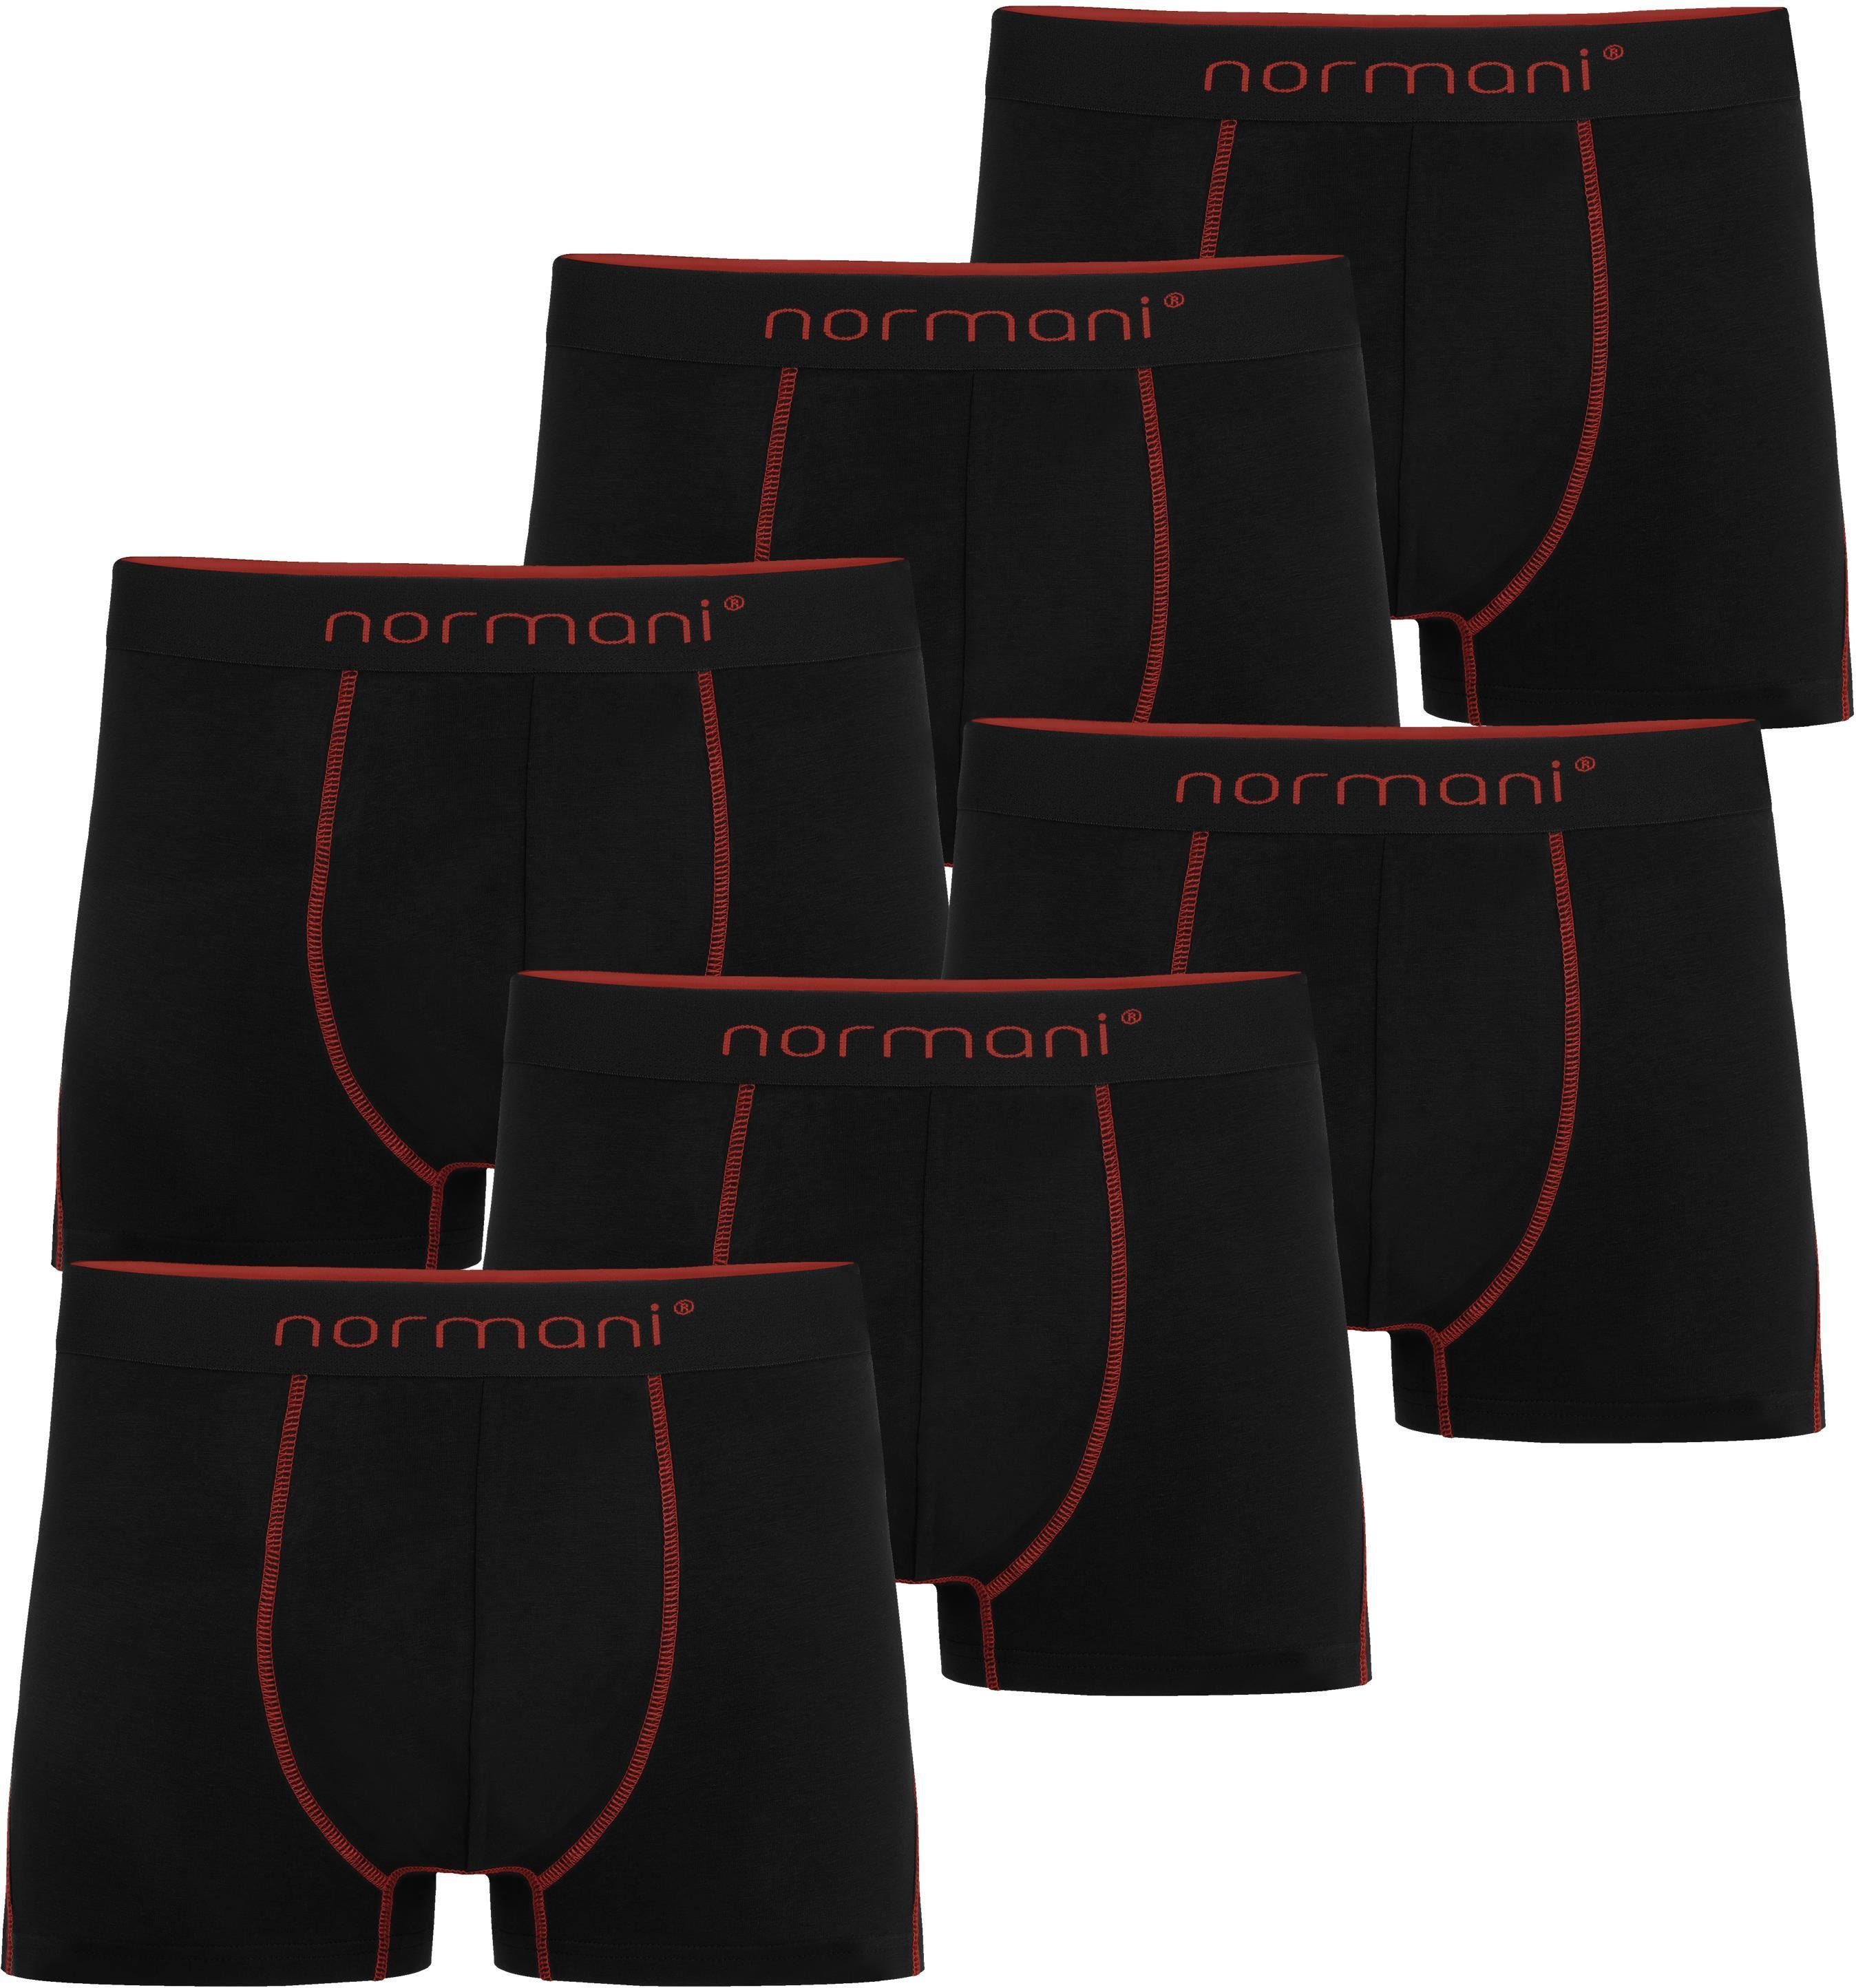 normani Boxershorts 6 Herren Baumwoll-Boxershorts Unterhose aus atmungsaktiver Baumwolle für Männer Rot